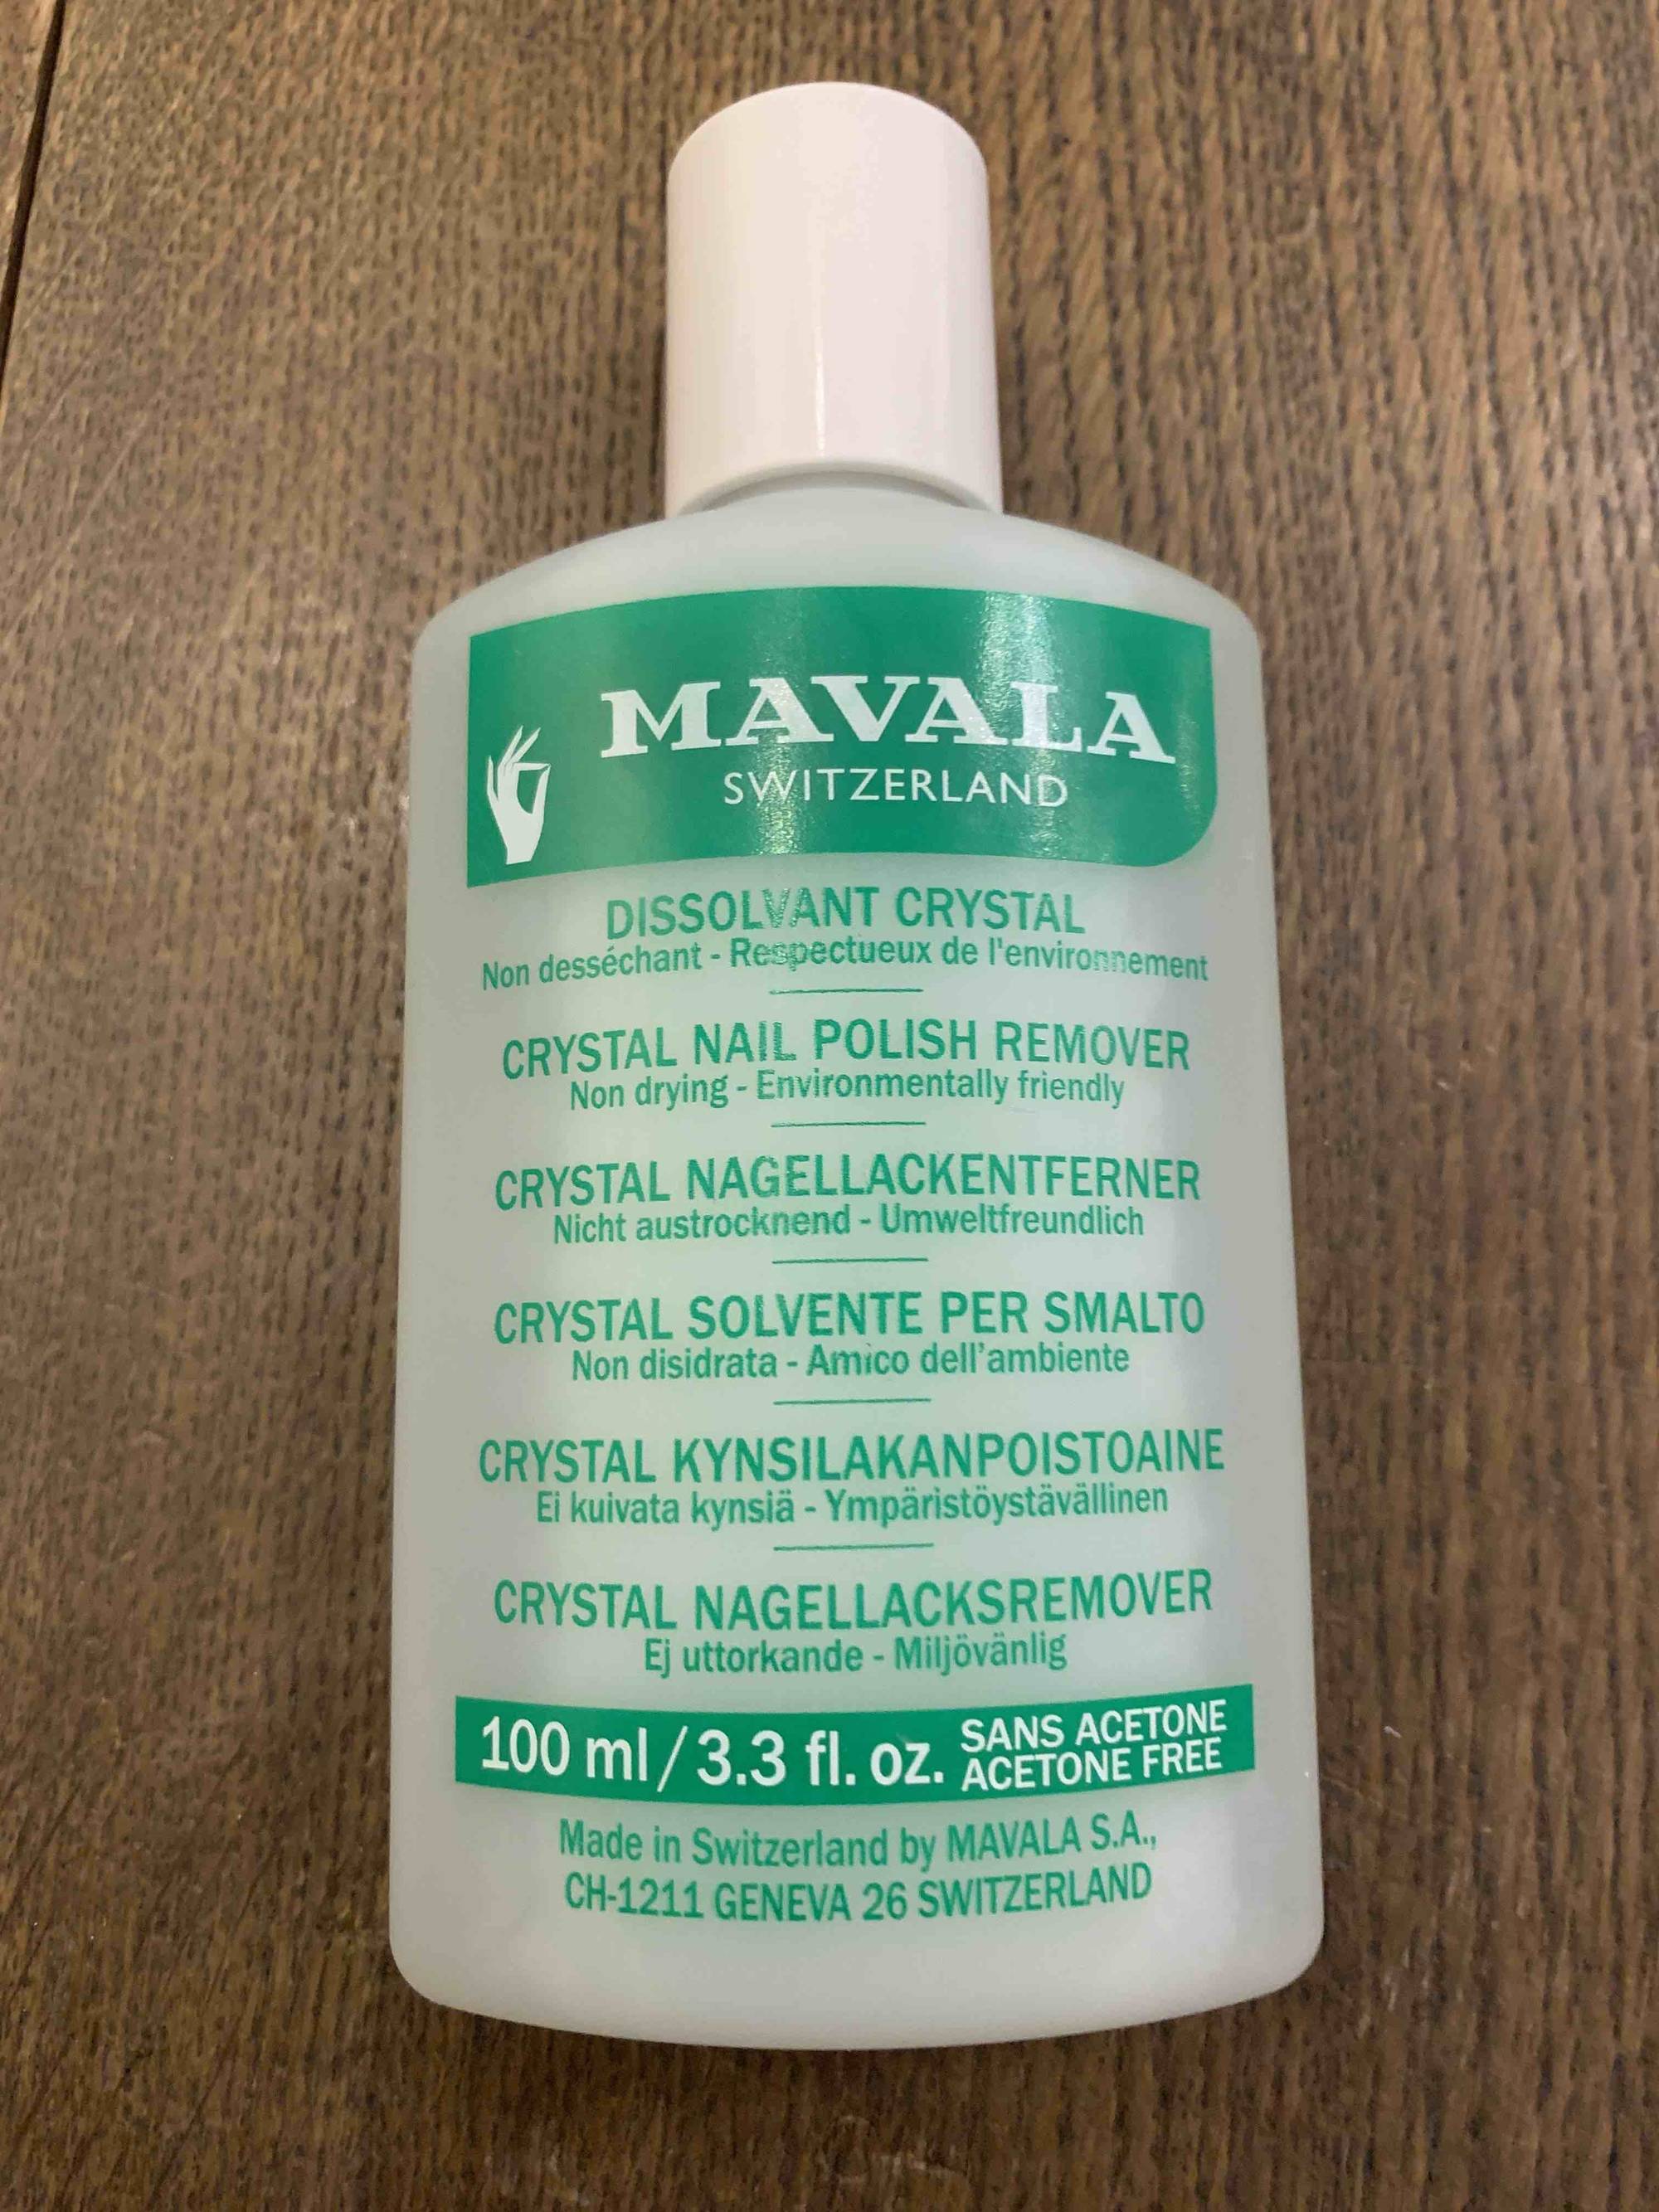 MAVALA - Dissolvant crystal non desséchant